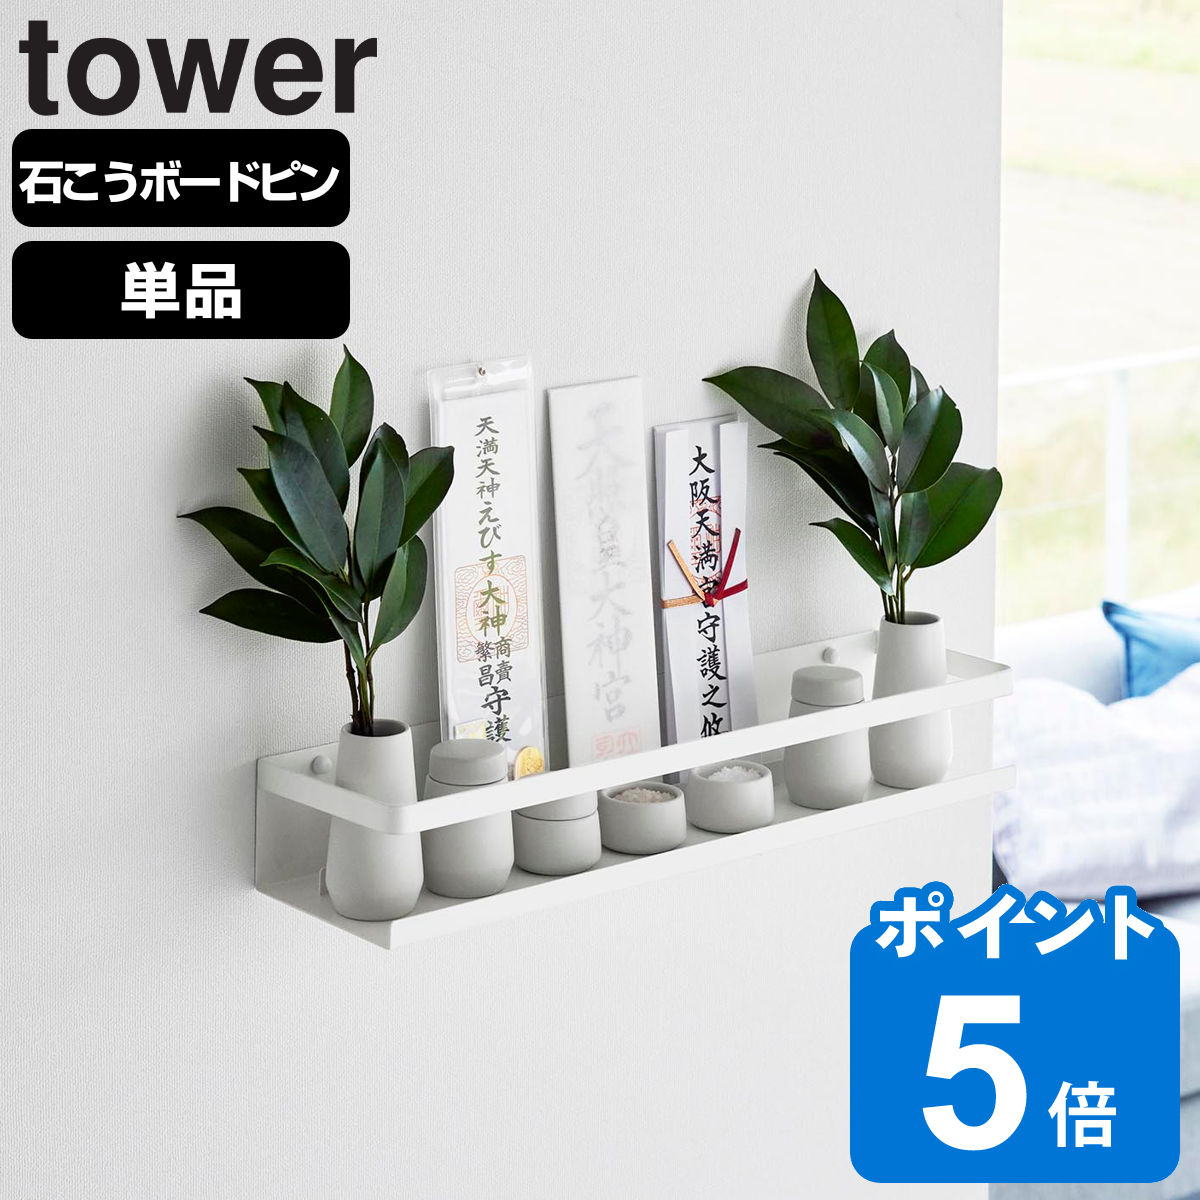 山崎実業 tower 石こうボード壁対応神棚 タワー ホワイト